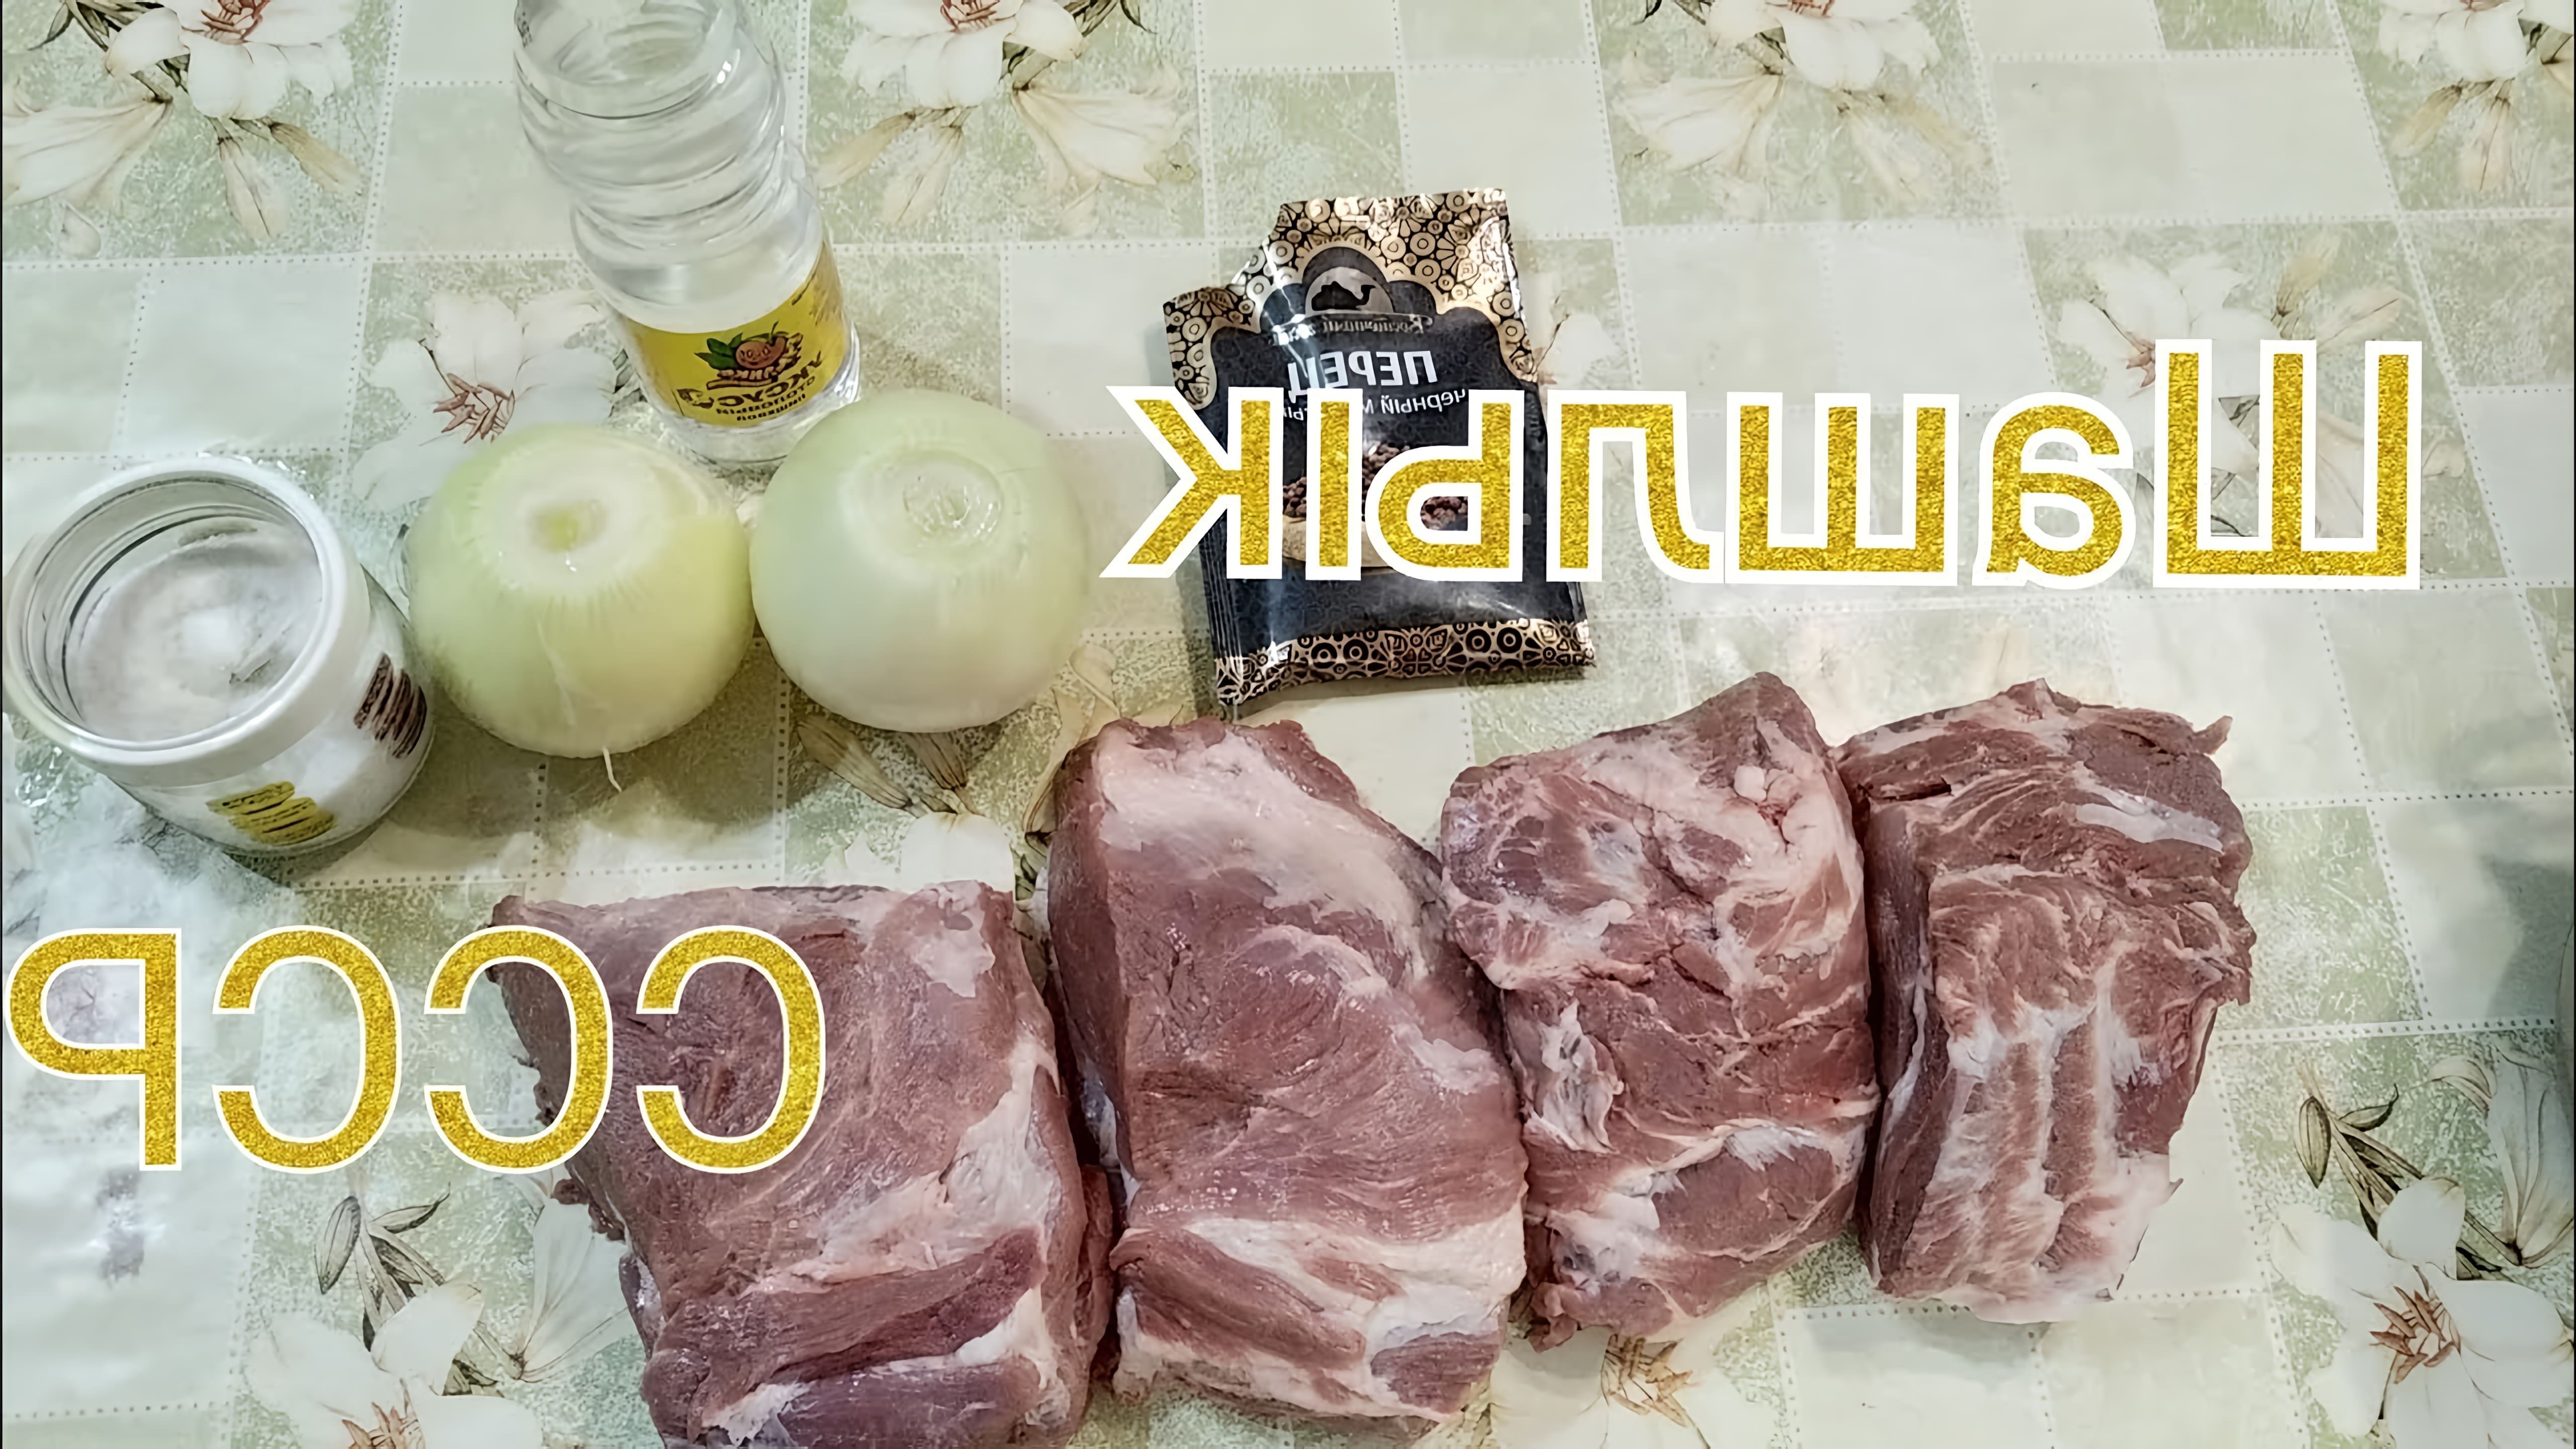 Видео показывает советский рецепт свиного шашлыка или кебаба, маринованного в уксусе